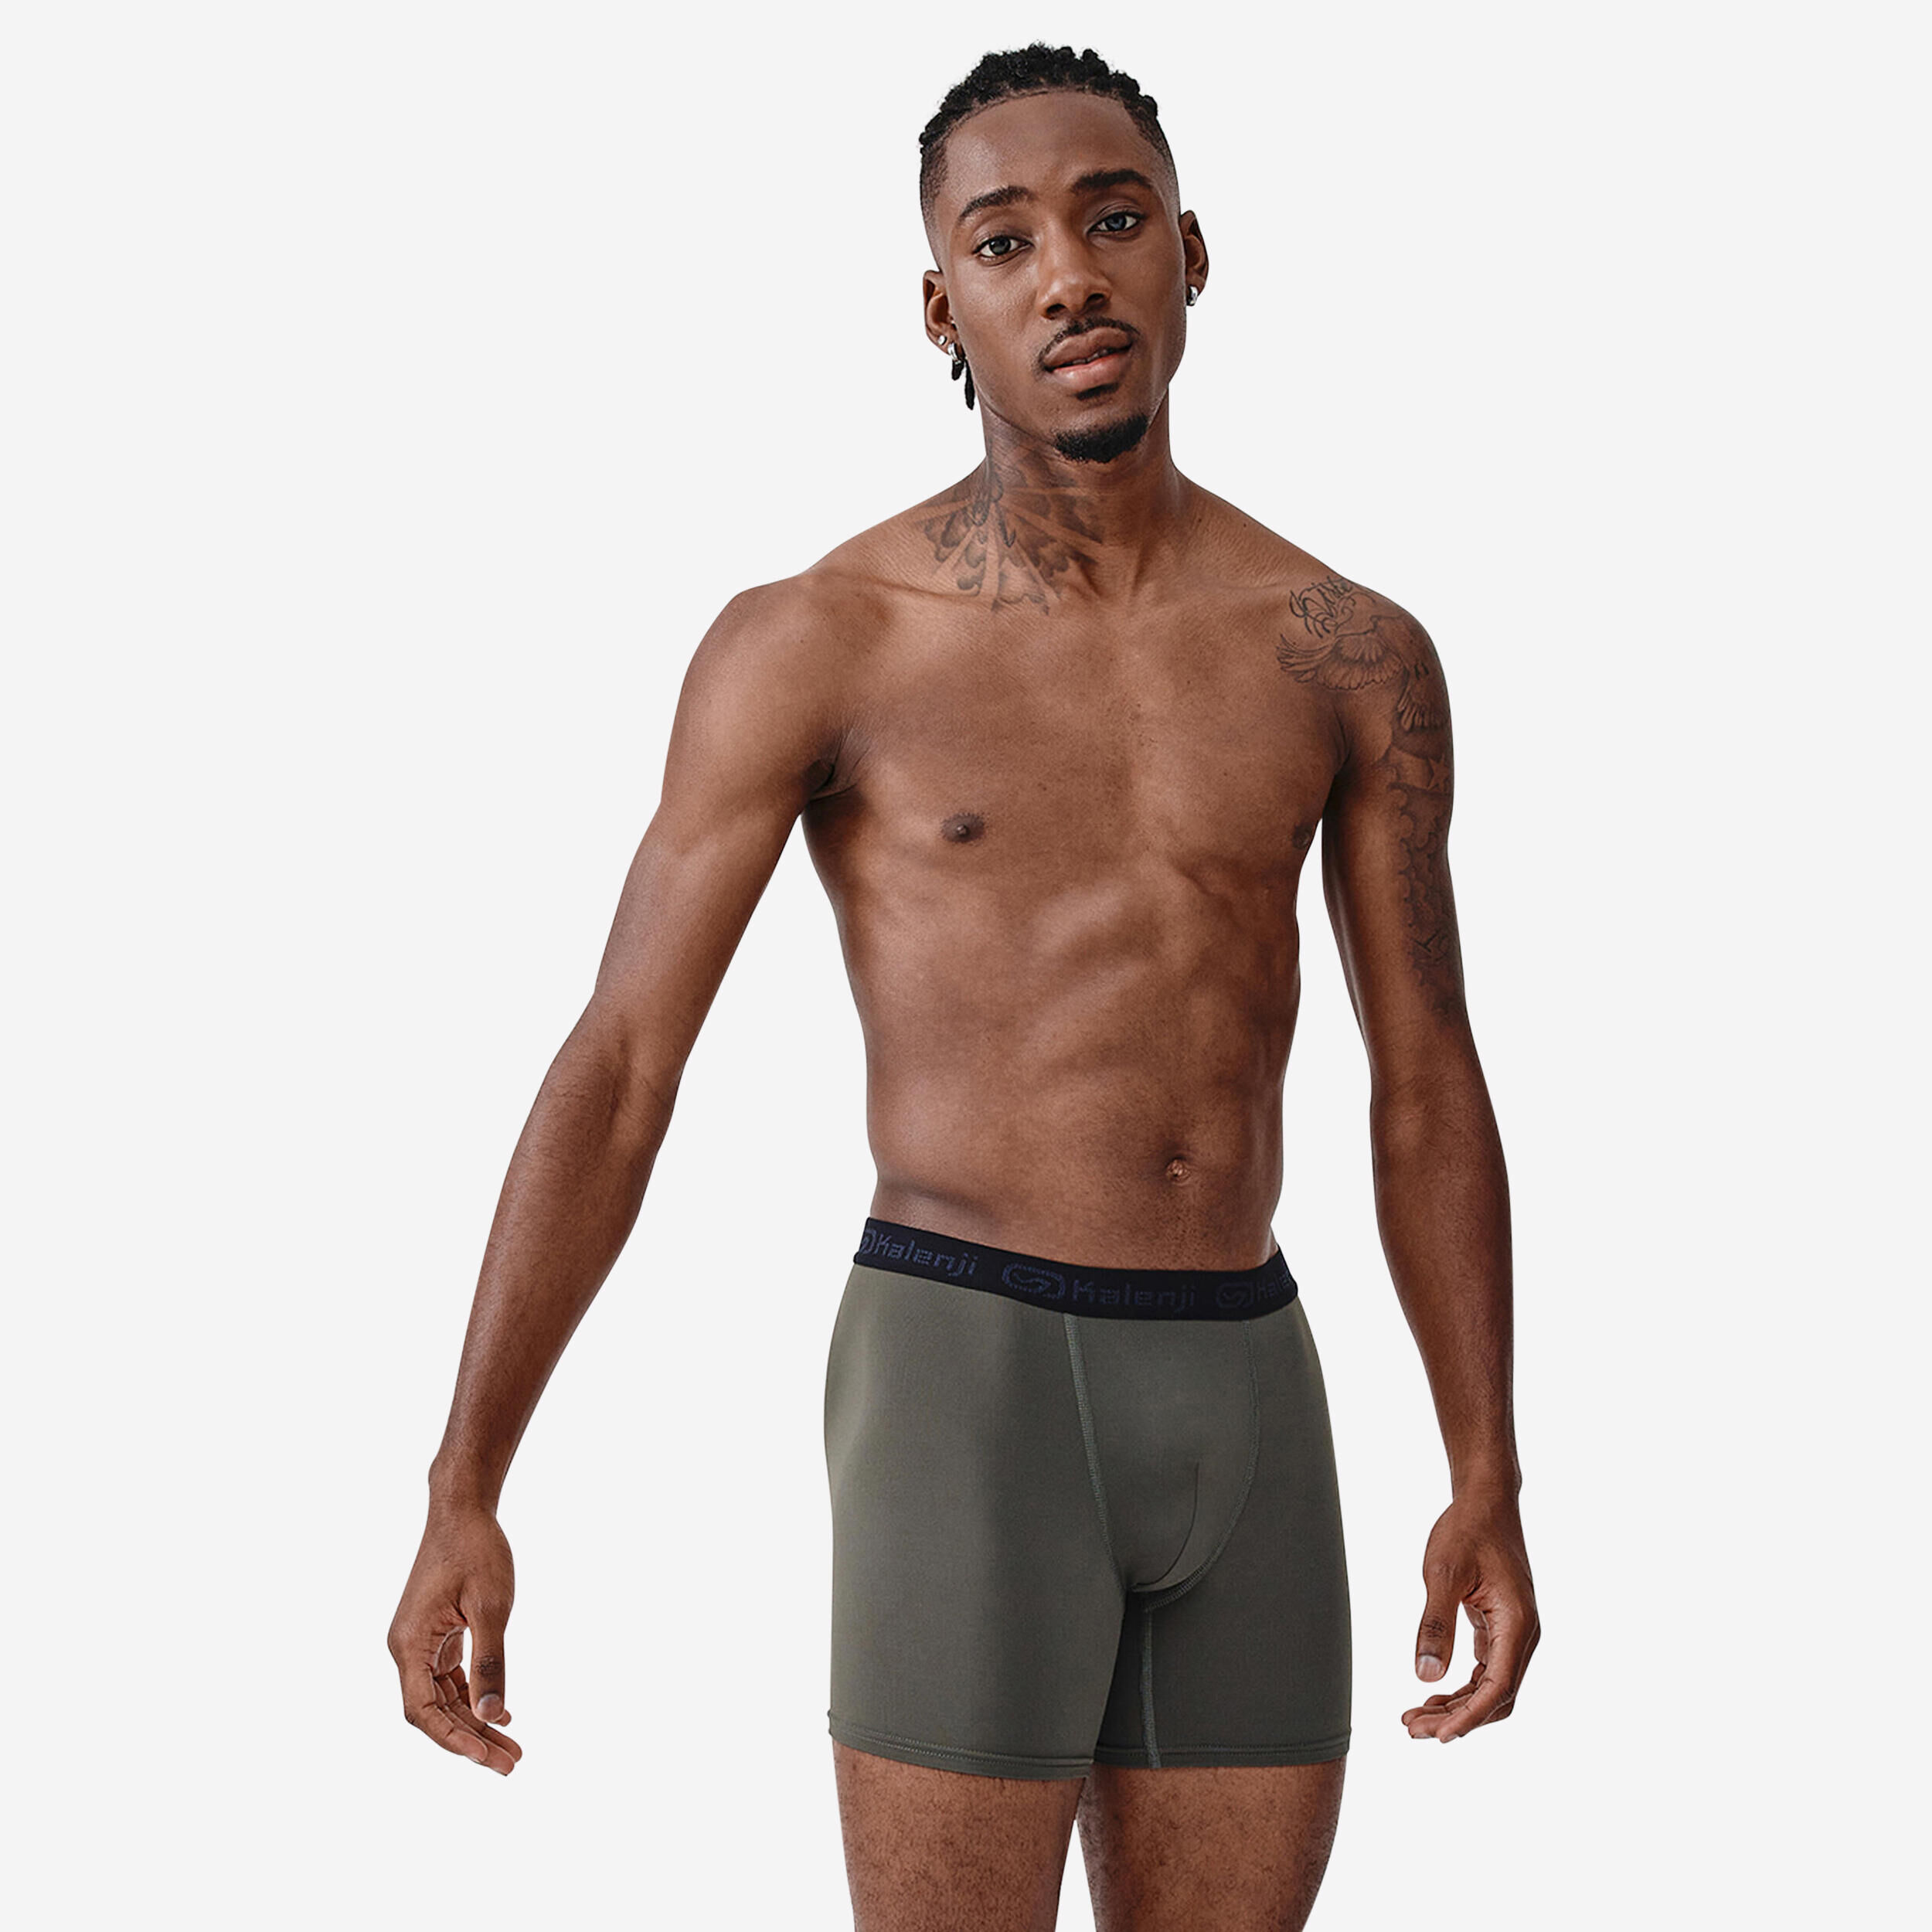 Running Underwear - Boxers & Briefs For Runners